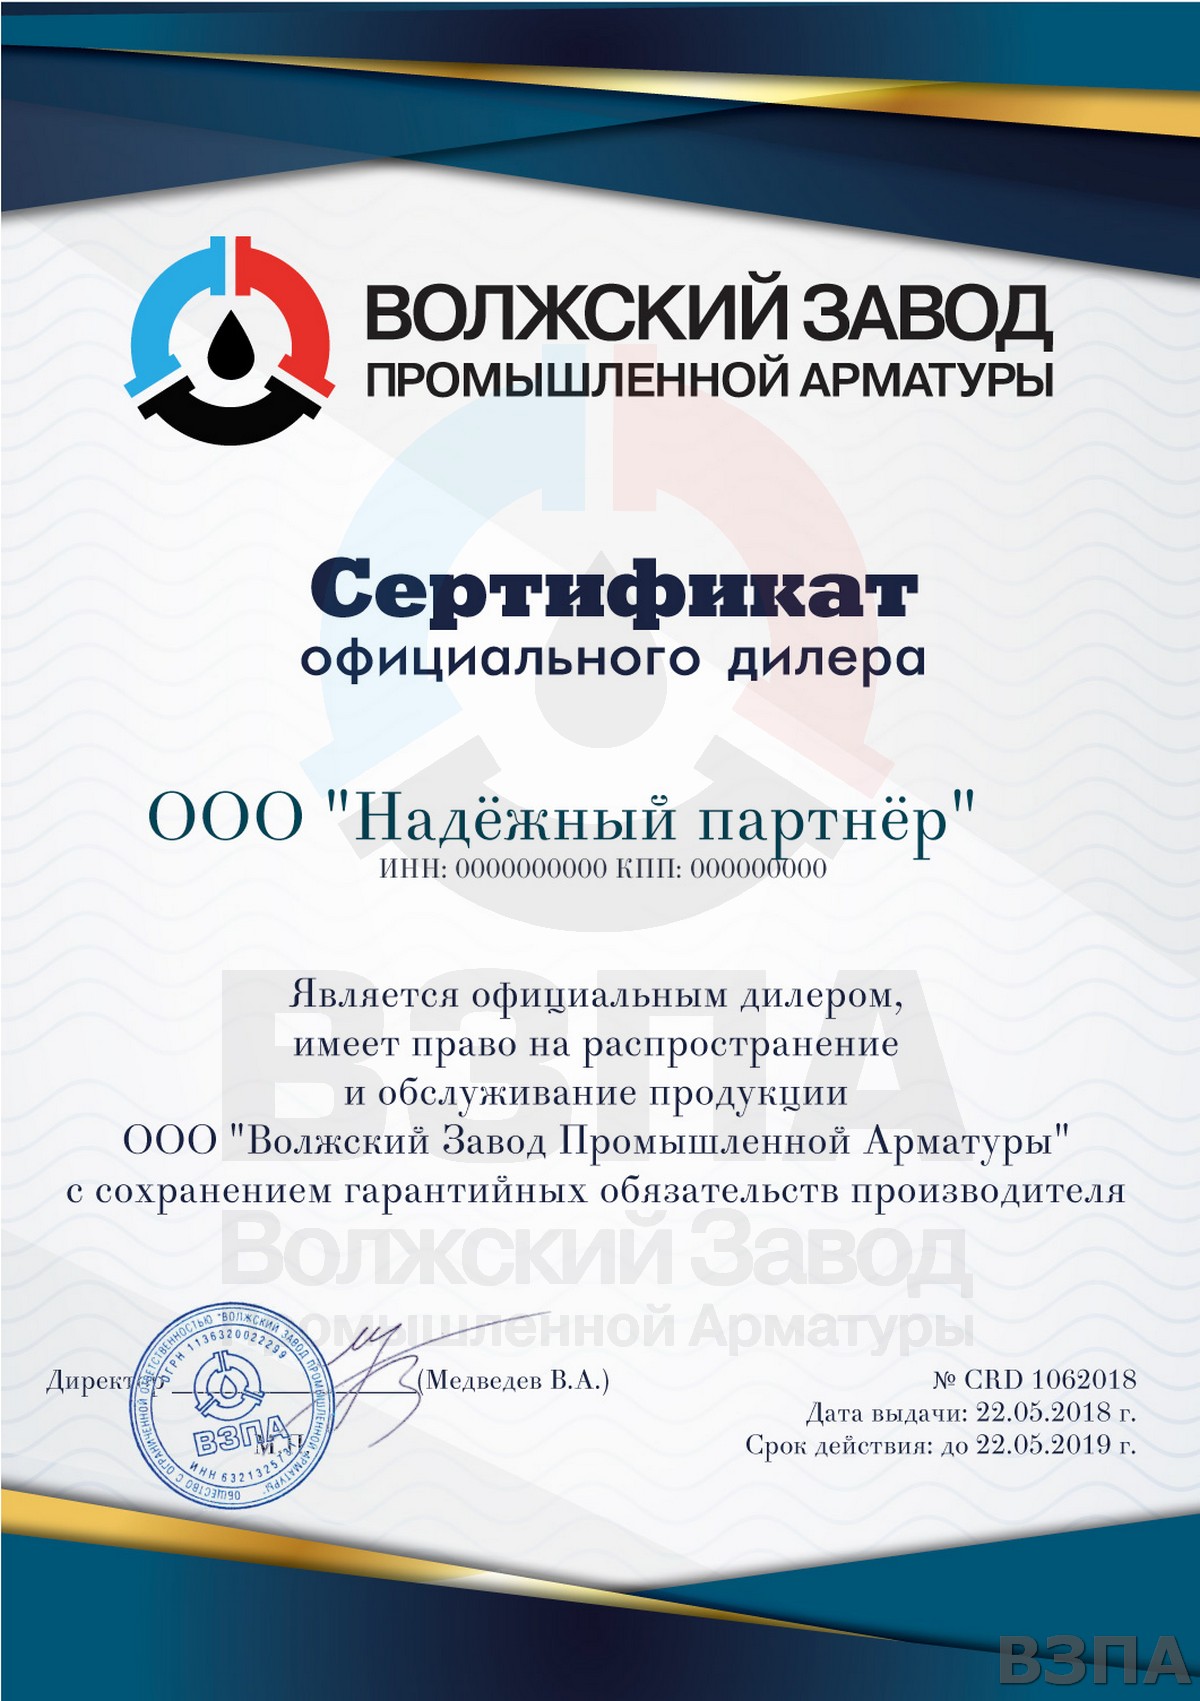 Сертификат официального регионального дилера Волжского Завода Промышленной Арматуры